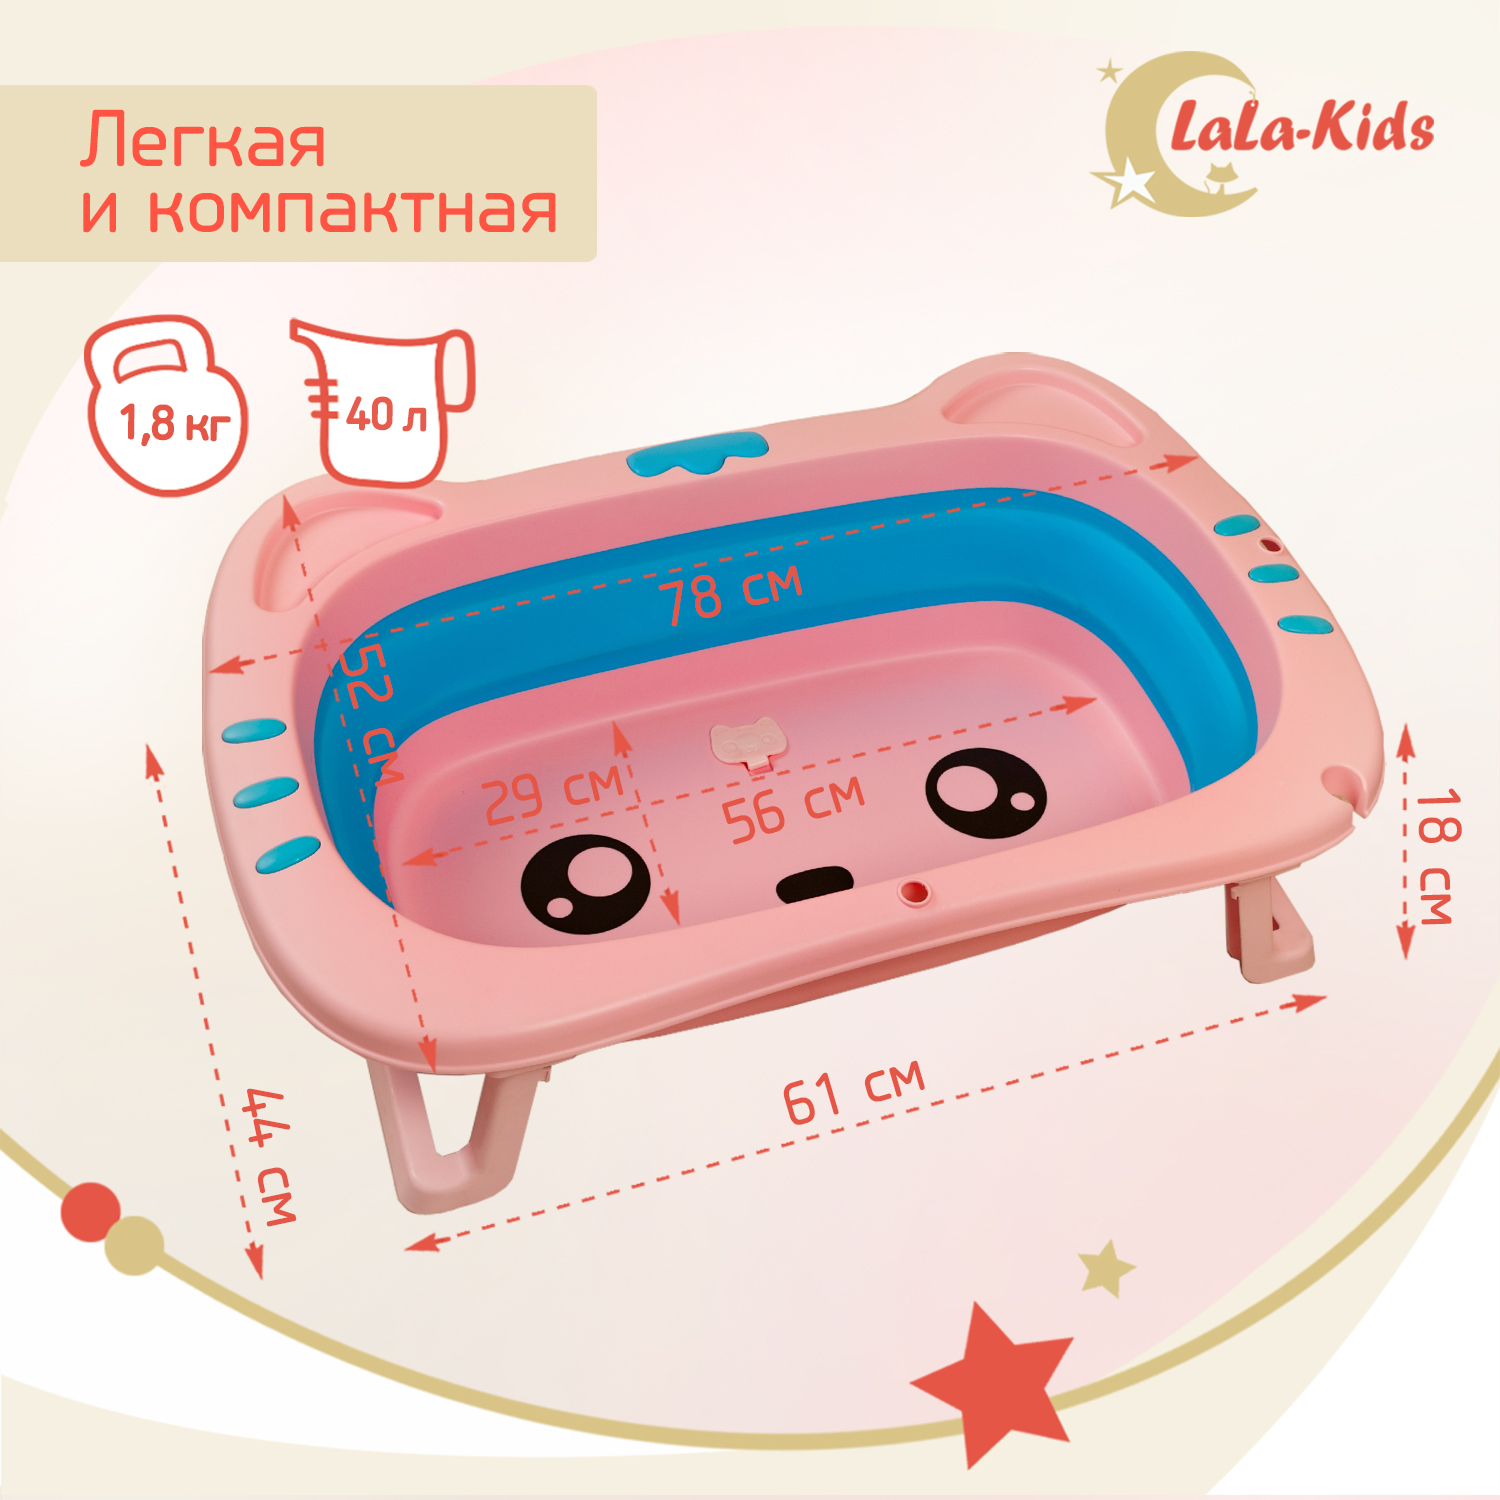 Ванночка для новорожденных LaLa-Kids складная с матрасиком светло-лиловым в комплекте - фото 7